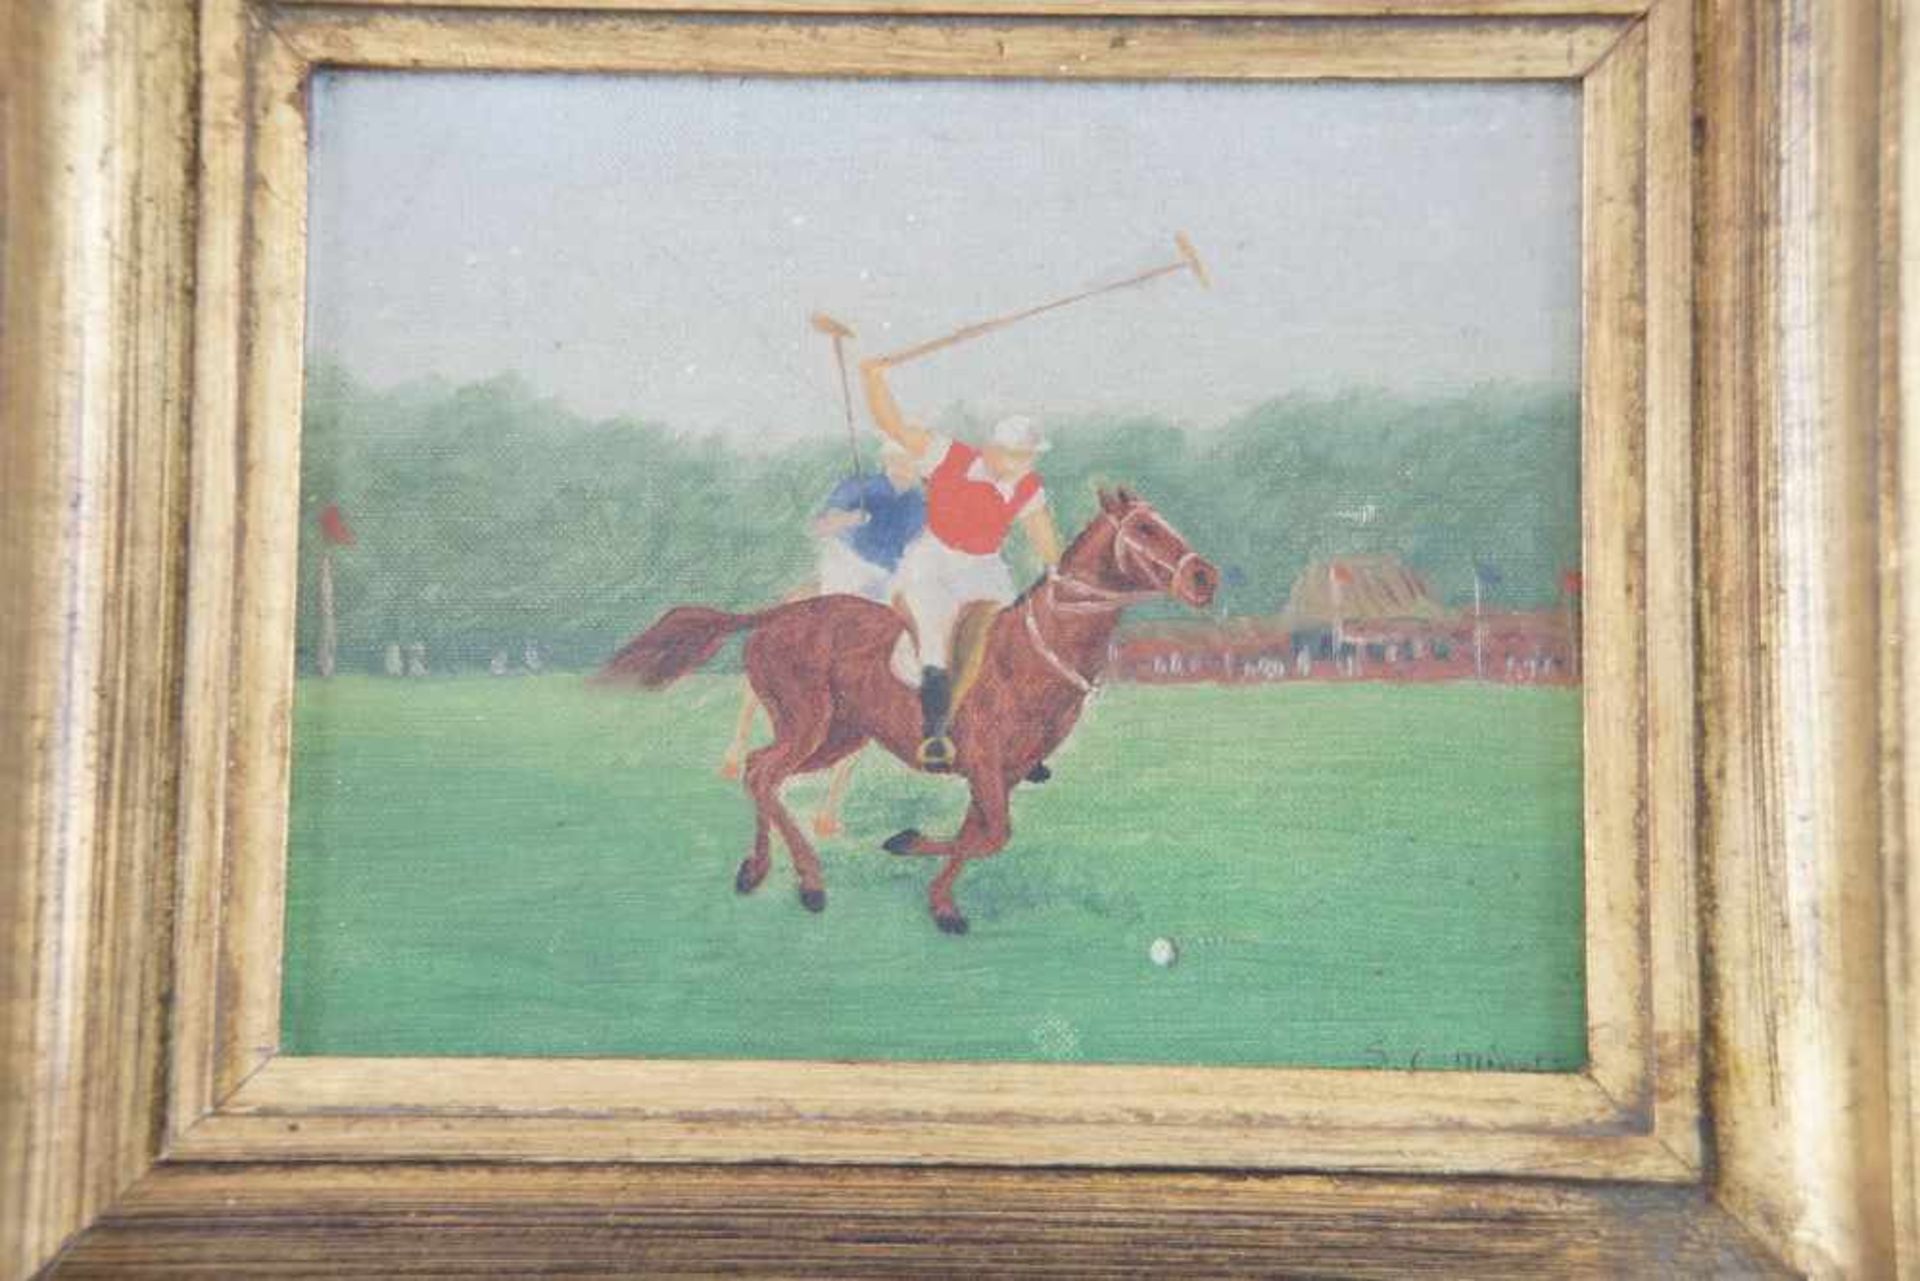 Jockey zu Pferd, Öl auf Leinwand, signiert, S. C. Minet, gerahmt, 29x34,5cm- - -24.00 % buyer's - Bild 2 aus 4